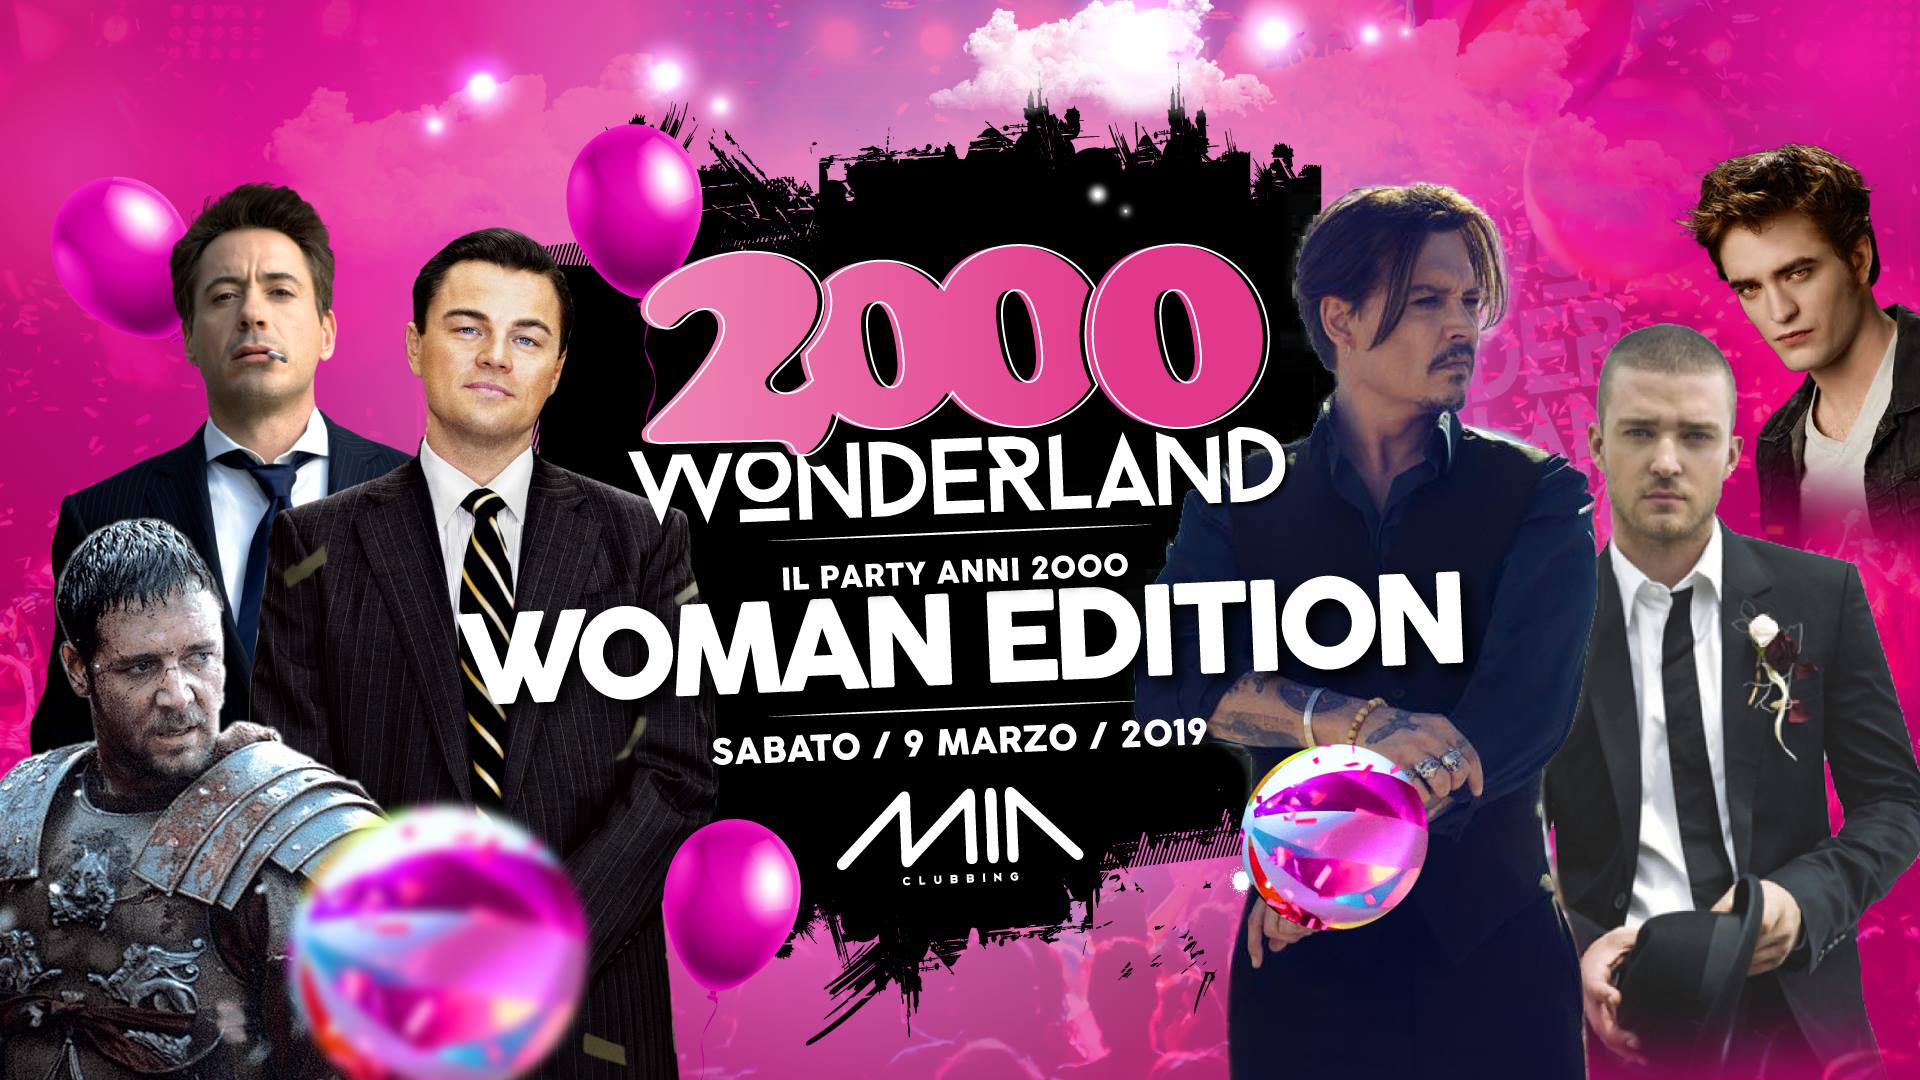 2000 Wonderland Woman Edition Mia Clubbing Porto Recanati